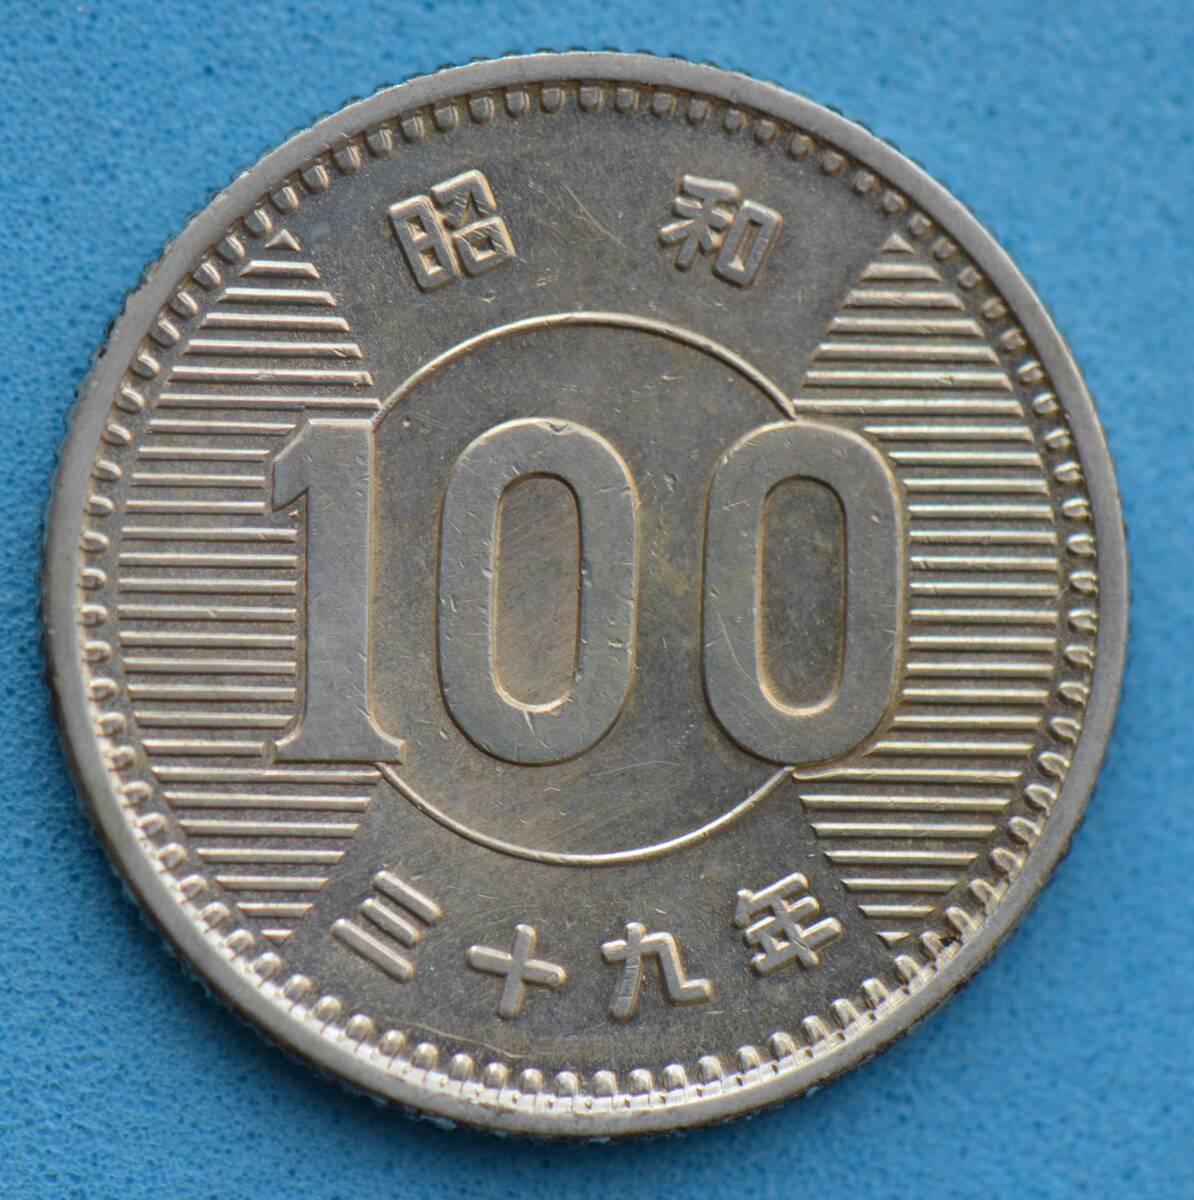  Showa era 39 year .100 jpy silver coin #18